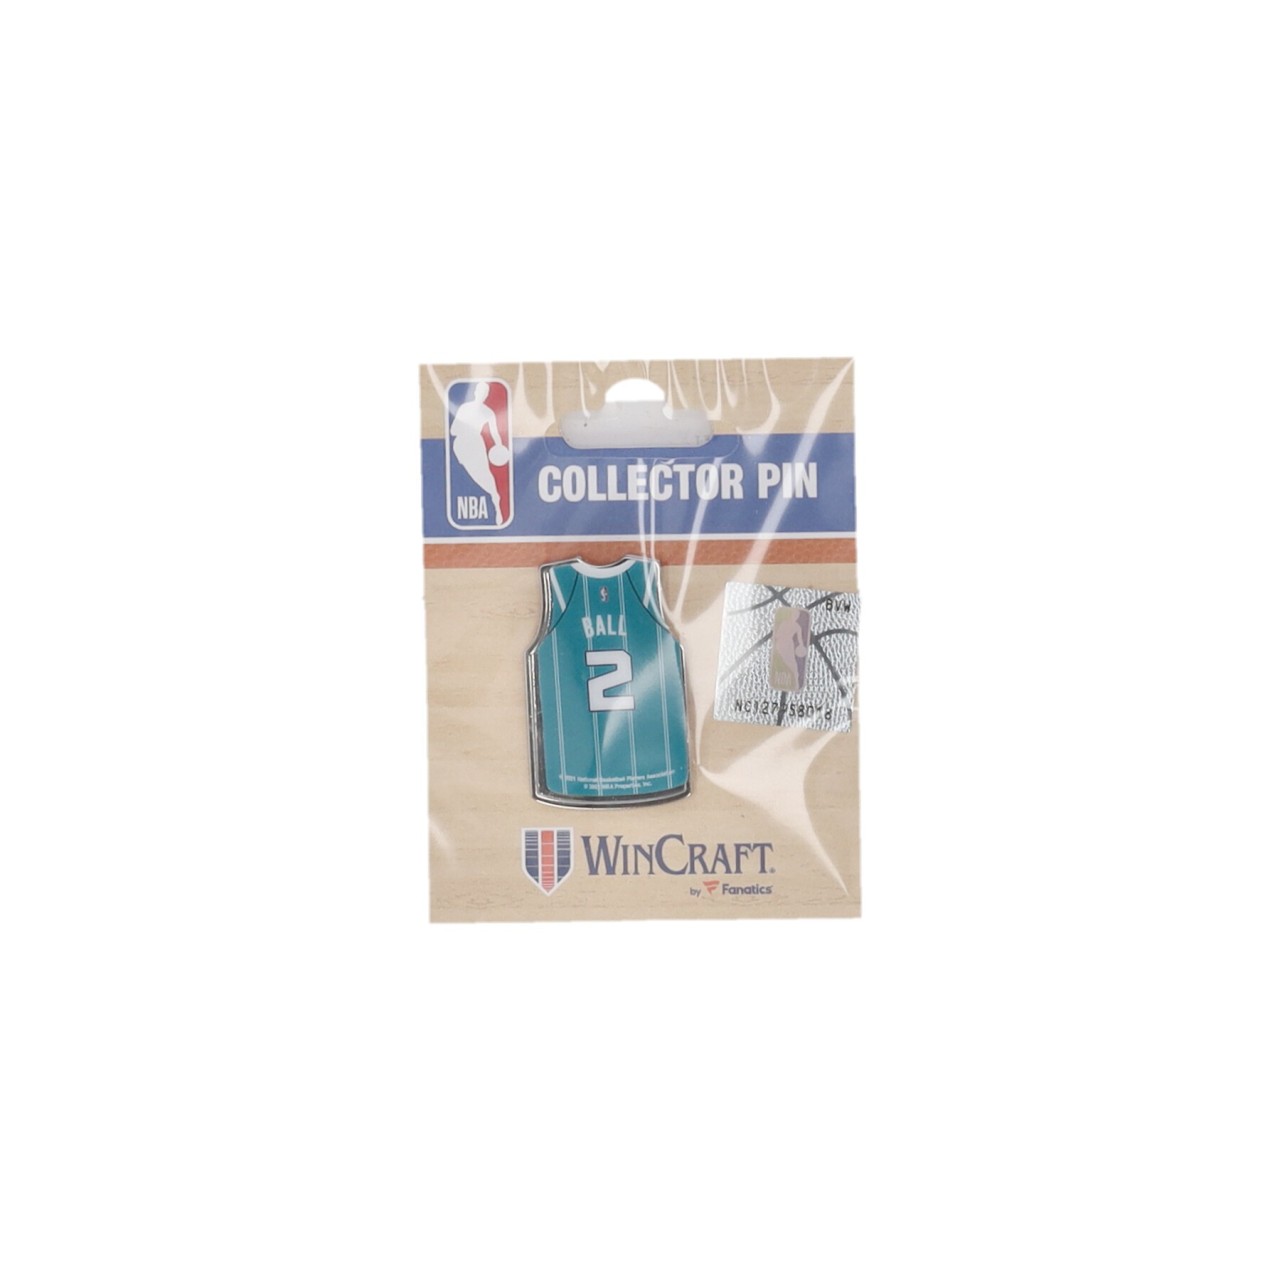 WINCRAFT NBA COLLECTOR PIN NO 1 LAMELO BALL CHAHOR 44194321